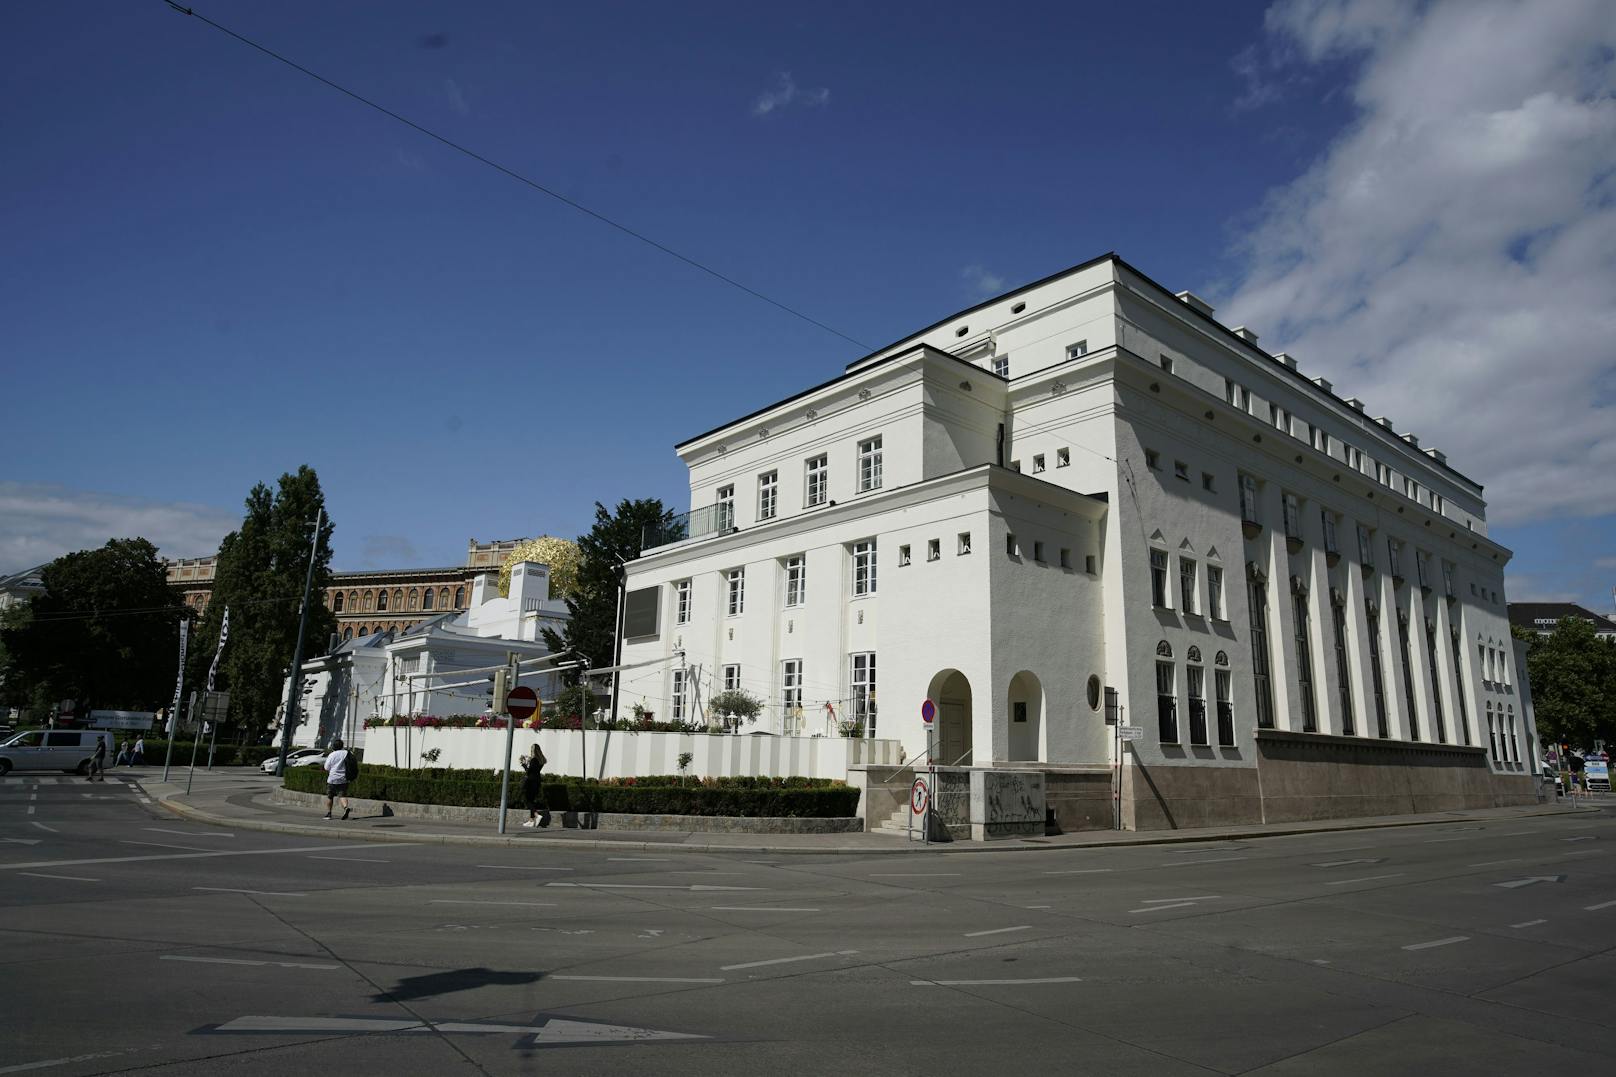 Das Bundesdenkmalamt erstattete Strafanzeige und fordert die Wiederherstellung der ursprünglichen Fassade.